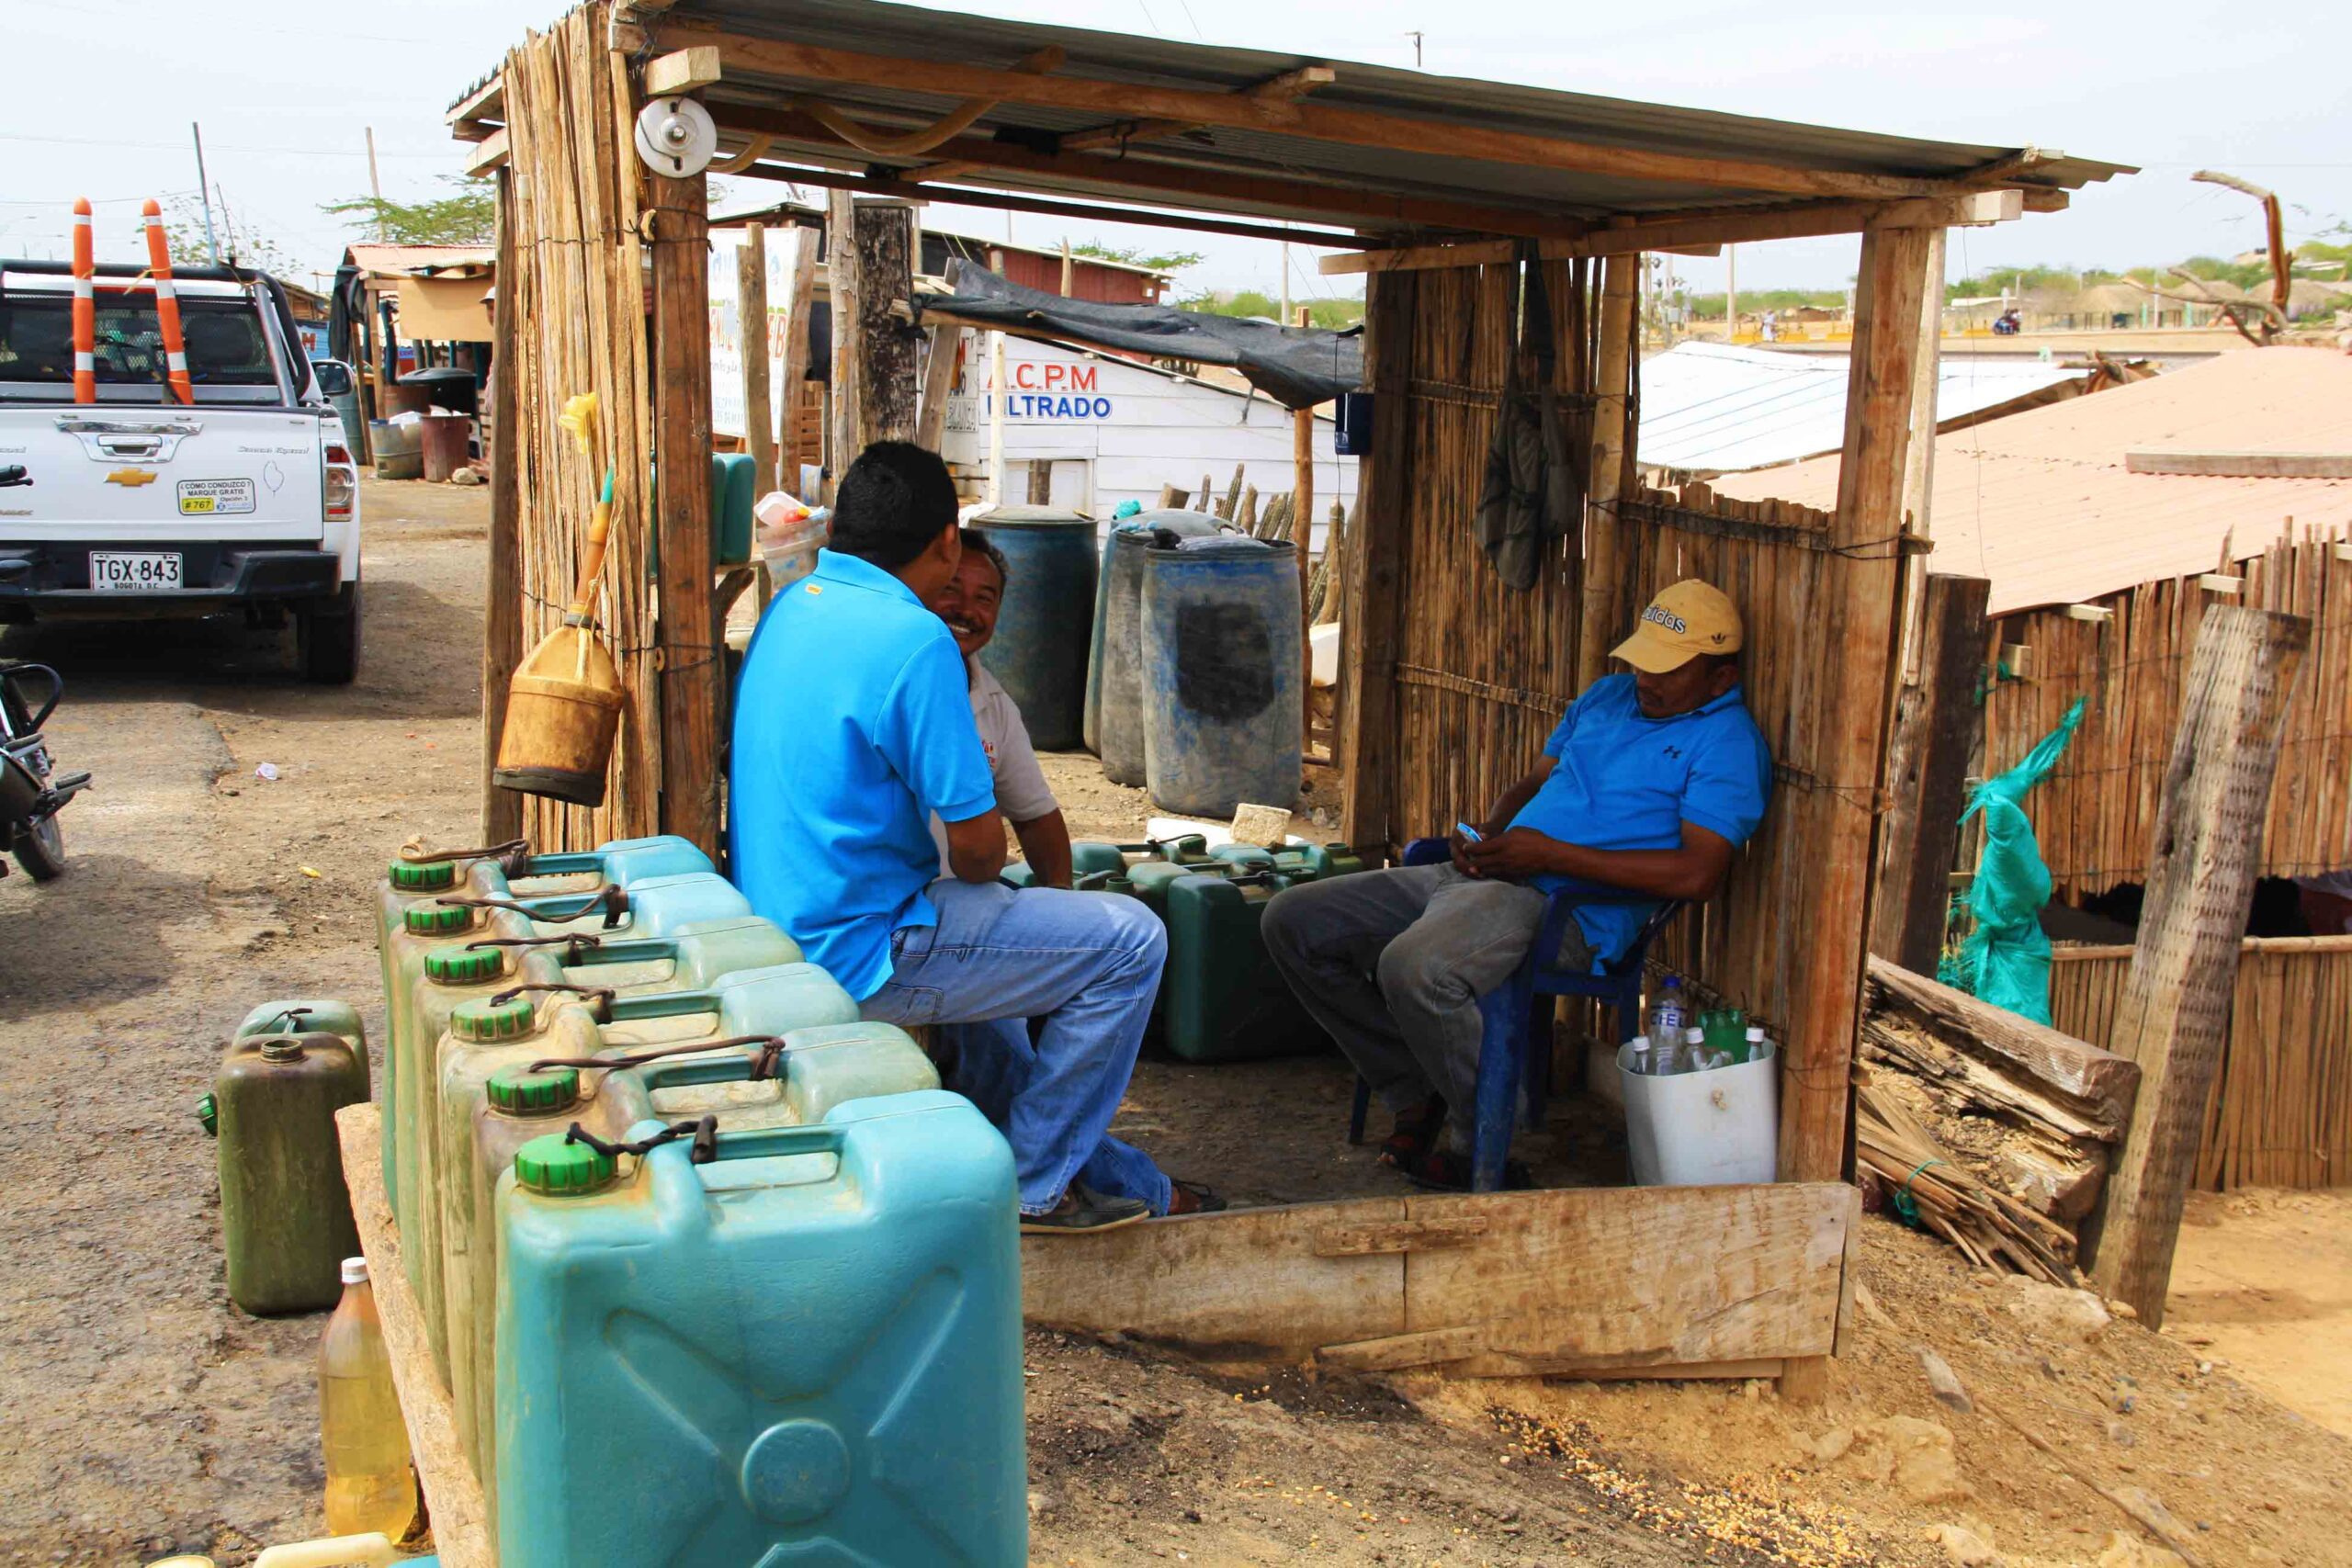 local gas station of La Guajira